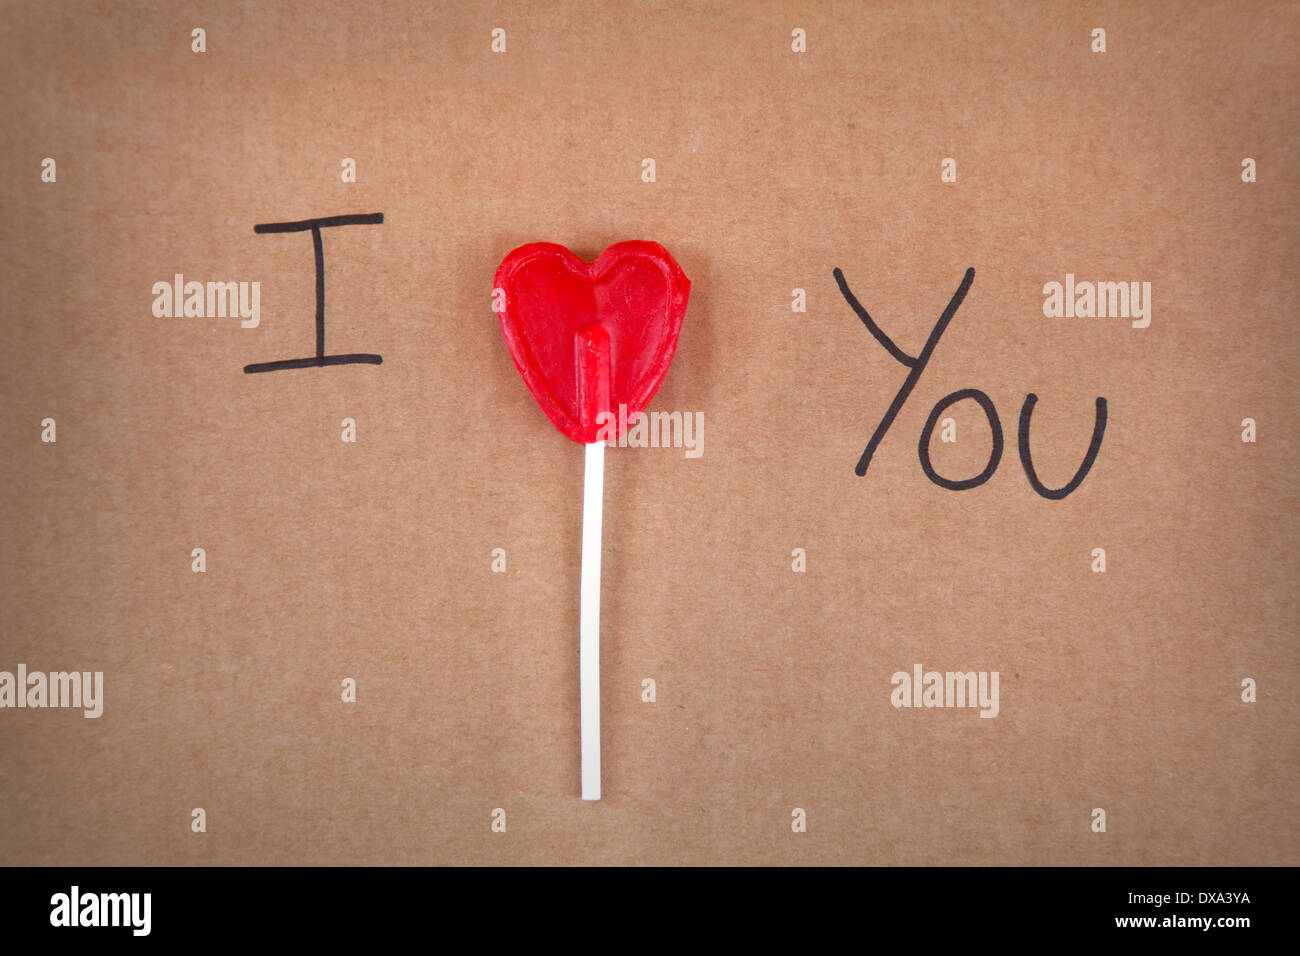 I love you message written a heart shape lollipop on a cardboard Stock Photo